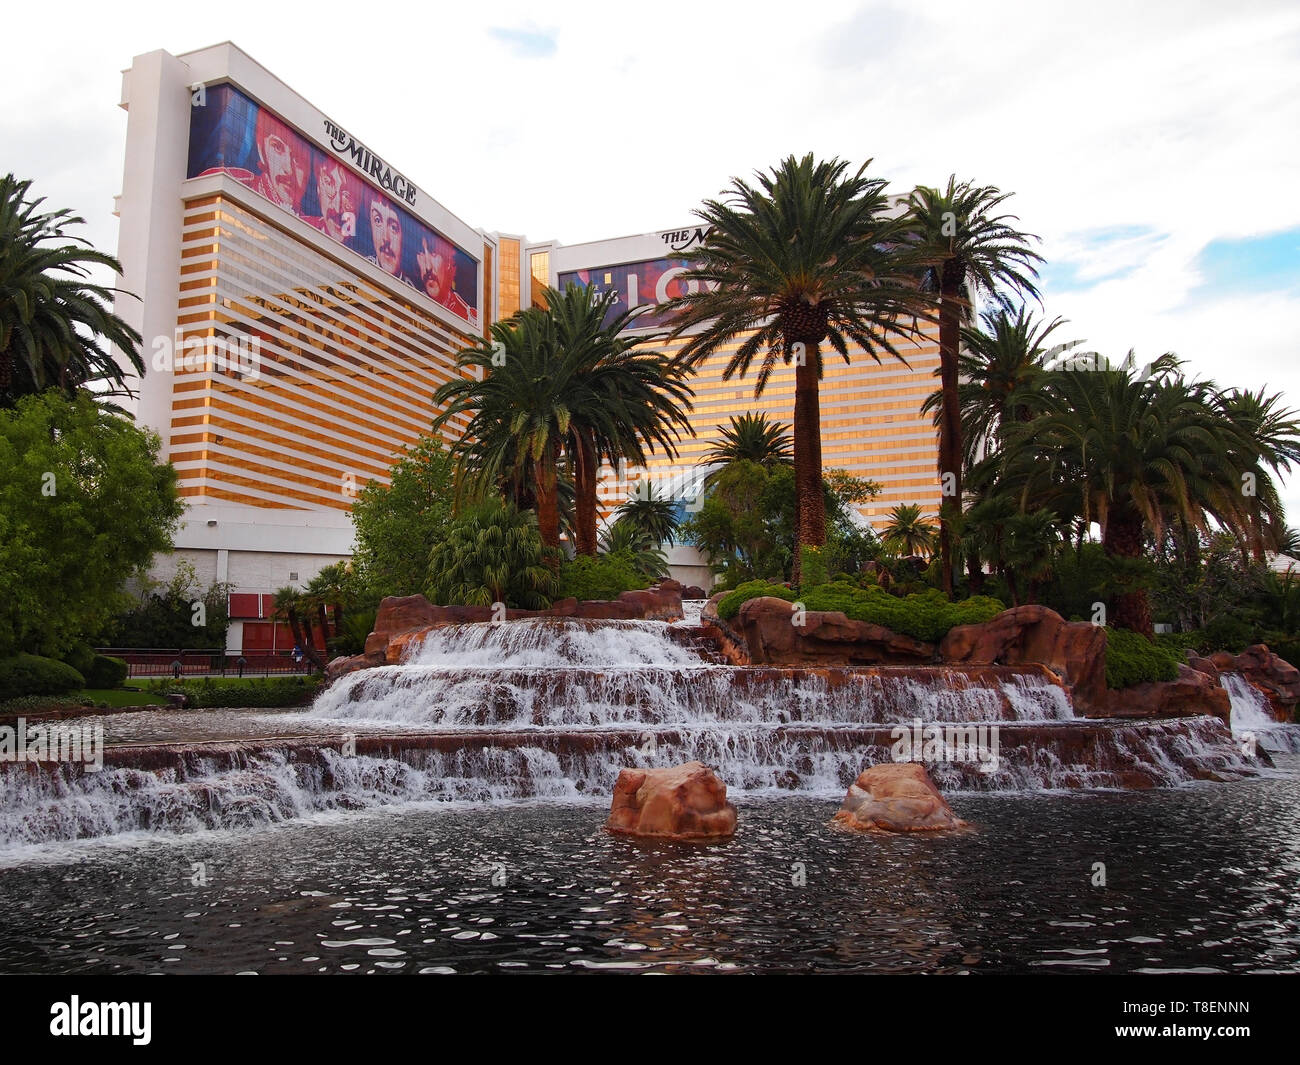 LAS VEGAS, NV - Juillet 21, 2018 : Le Las Vegas Boulevard face à l'extérieur de l'hôtel Mirage à thème Polynésien populaires et Casino, à Las Vegas, Nevada. Banque D'Images